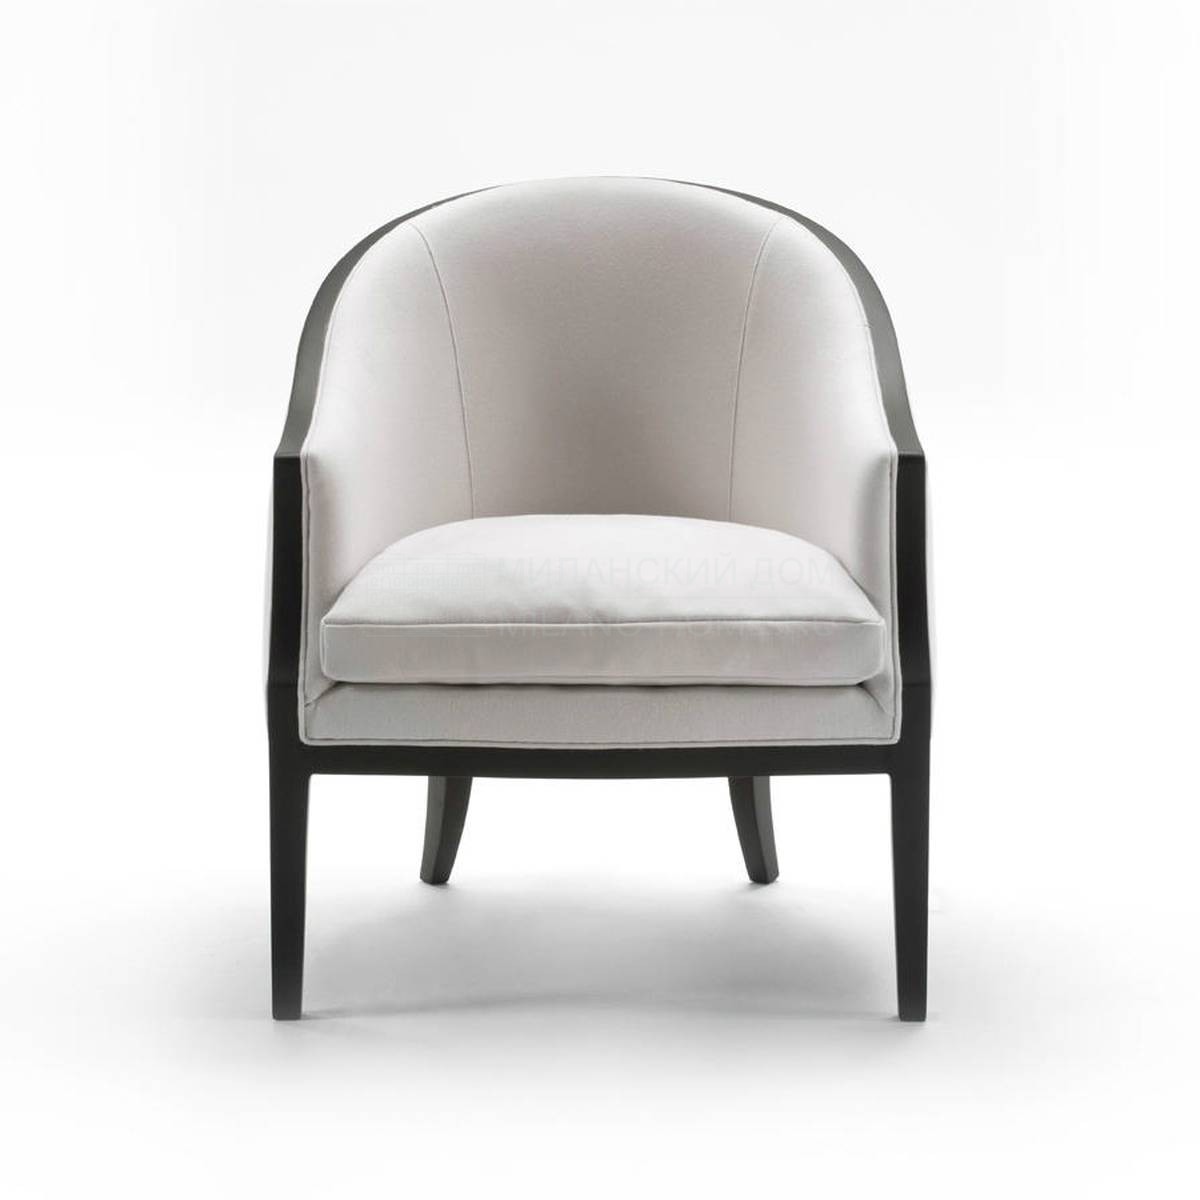 Круглое кресло ABC armchair из Италии фабрики LIVING DIVANI